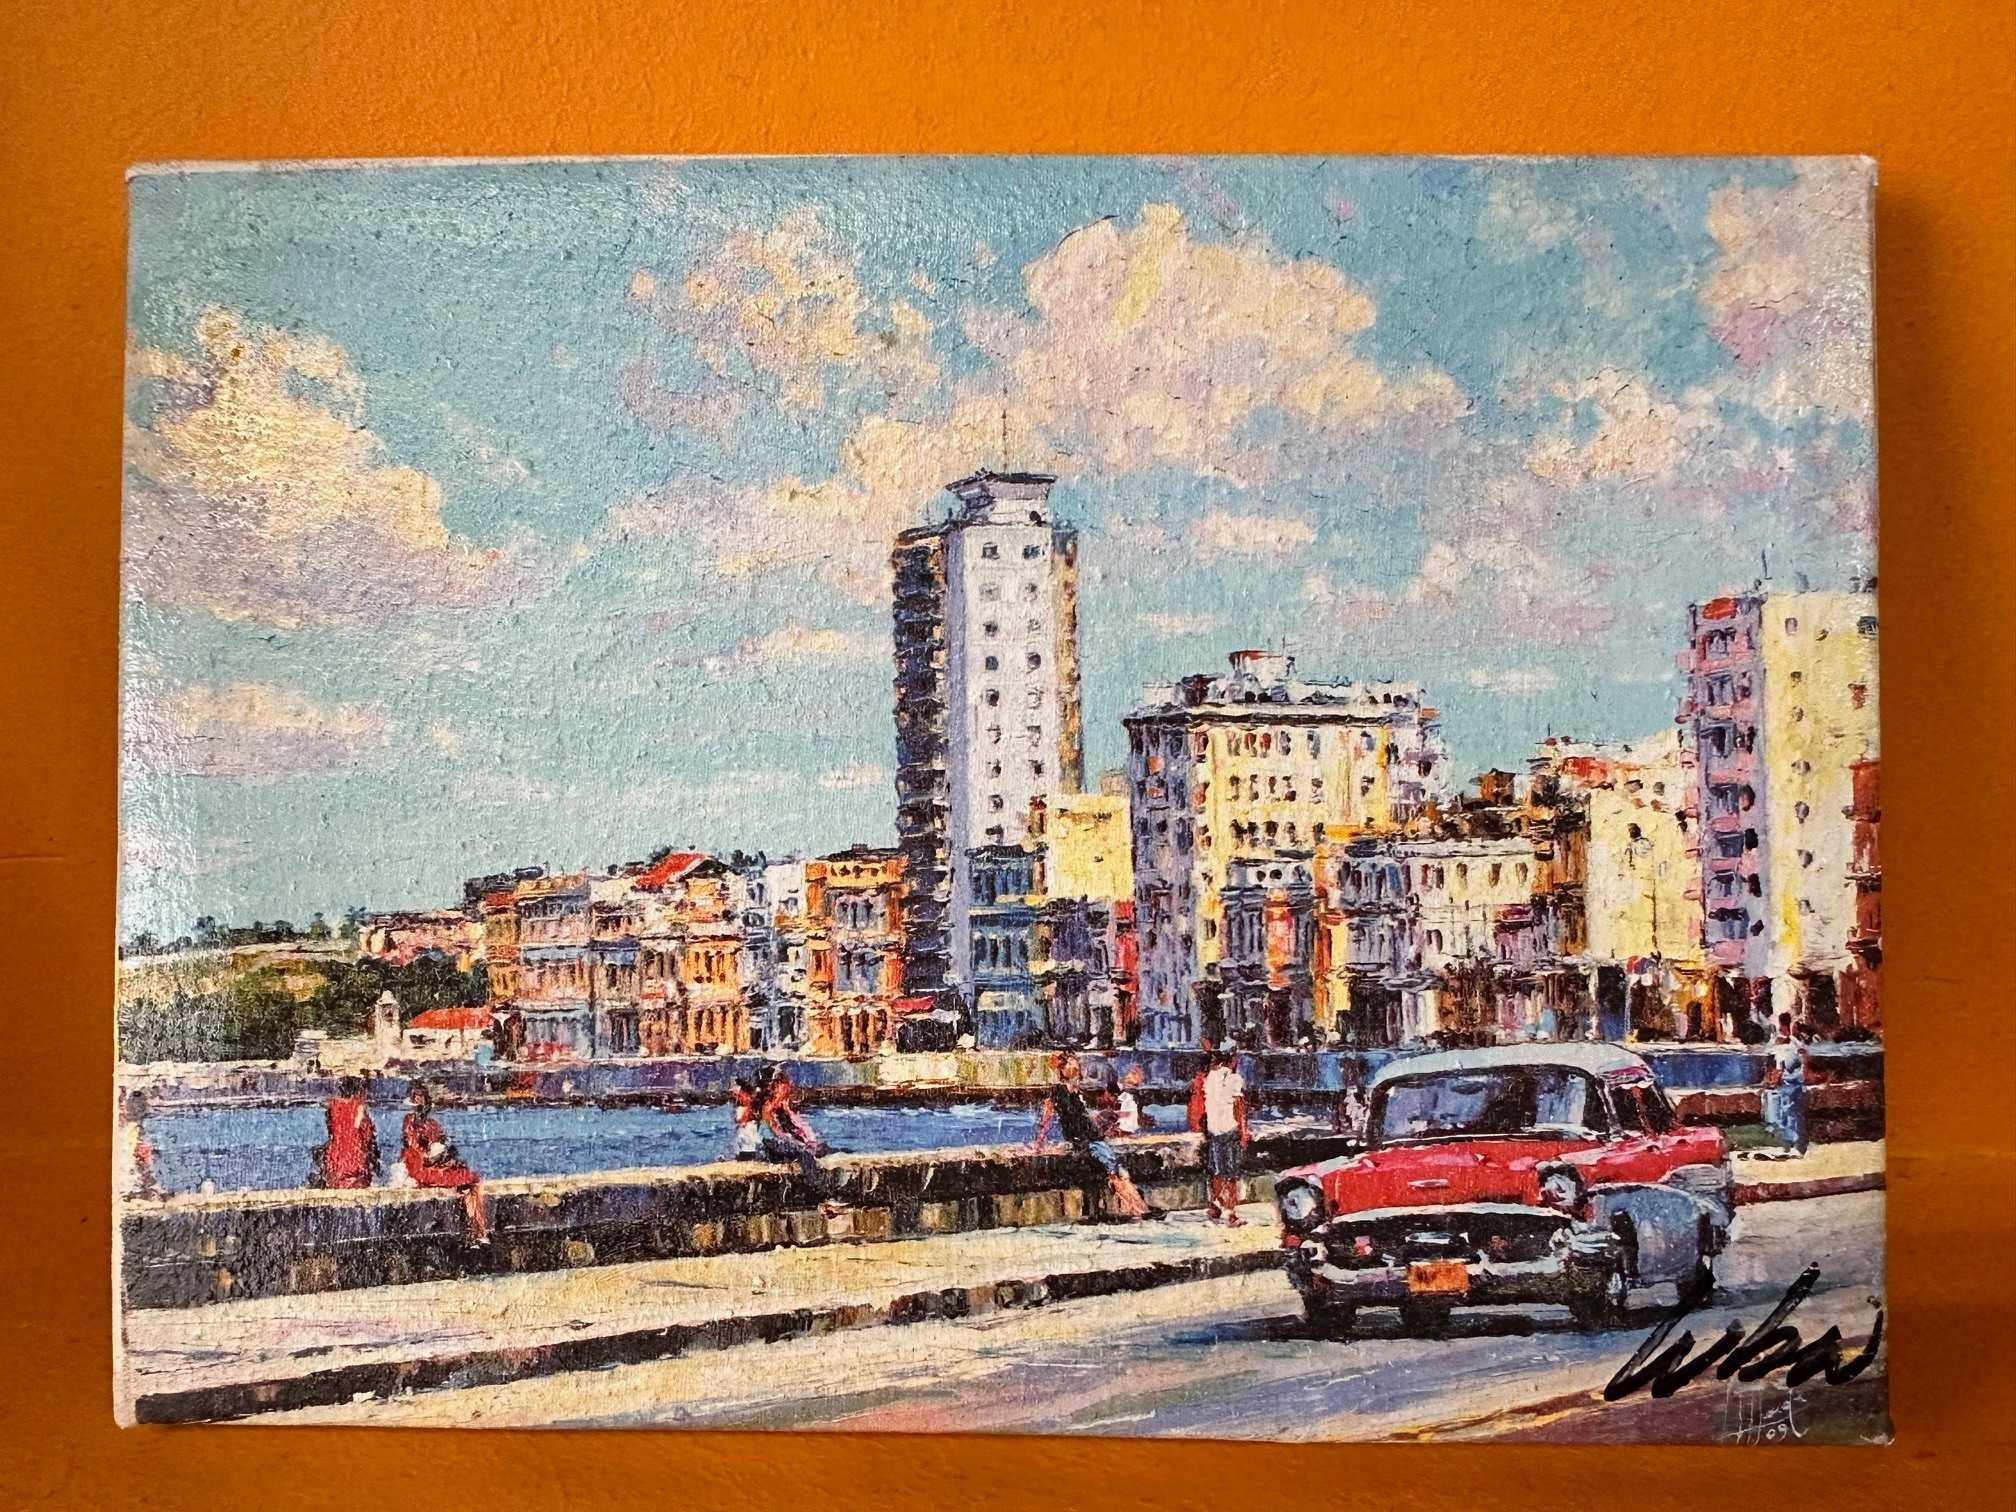 Obrazek Malecón Hawana, Kuba, namalowany przez miejscowego artystę